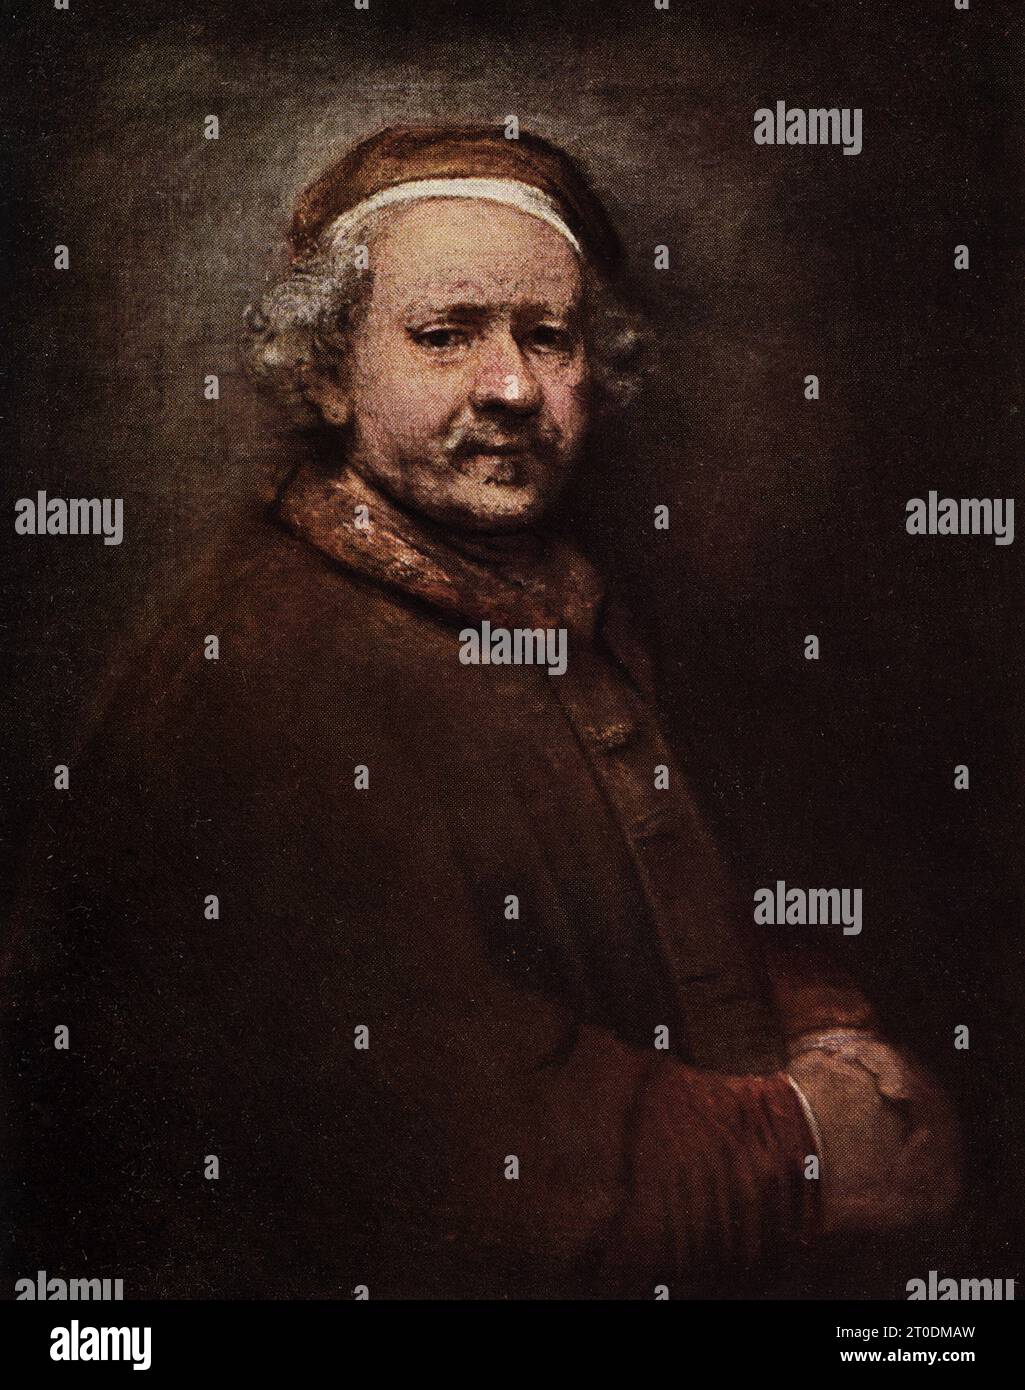 La légende de 1916 se lit comme suit: "Rembrandt 1606-1669 École néerlandaise de mnsterdam-Rembrandt dans la vieillesse. Galerie nationale. Peint vers 1659. dans l'huile sur toile. 2 pi 9 in h x 2 pi 3,5 in w.' l'artiste néerlandais Rembrandt (1606-1669) (nom complet - Rembrandt Harmenszoon van Rijn) était un peintre néerlandais de l'âge d'or, graveur et dessinateur et de l'École néerlandaise d'Amsterdam. Rembrandt a peint celui-ci de lui-même dans la vieillesse. Maître novateur et prolifique dans trois médias, Rembrandt est généralement considéré comme l'un des plus grands artistes visuels de l'histoire de l'art. Banque D'Images